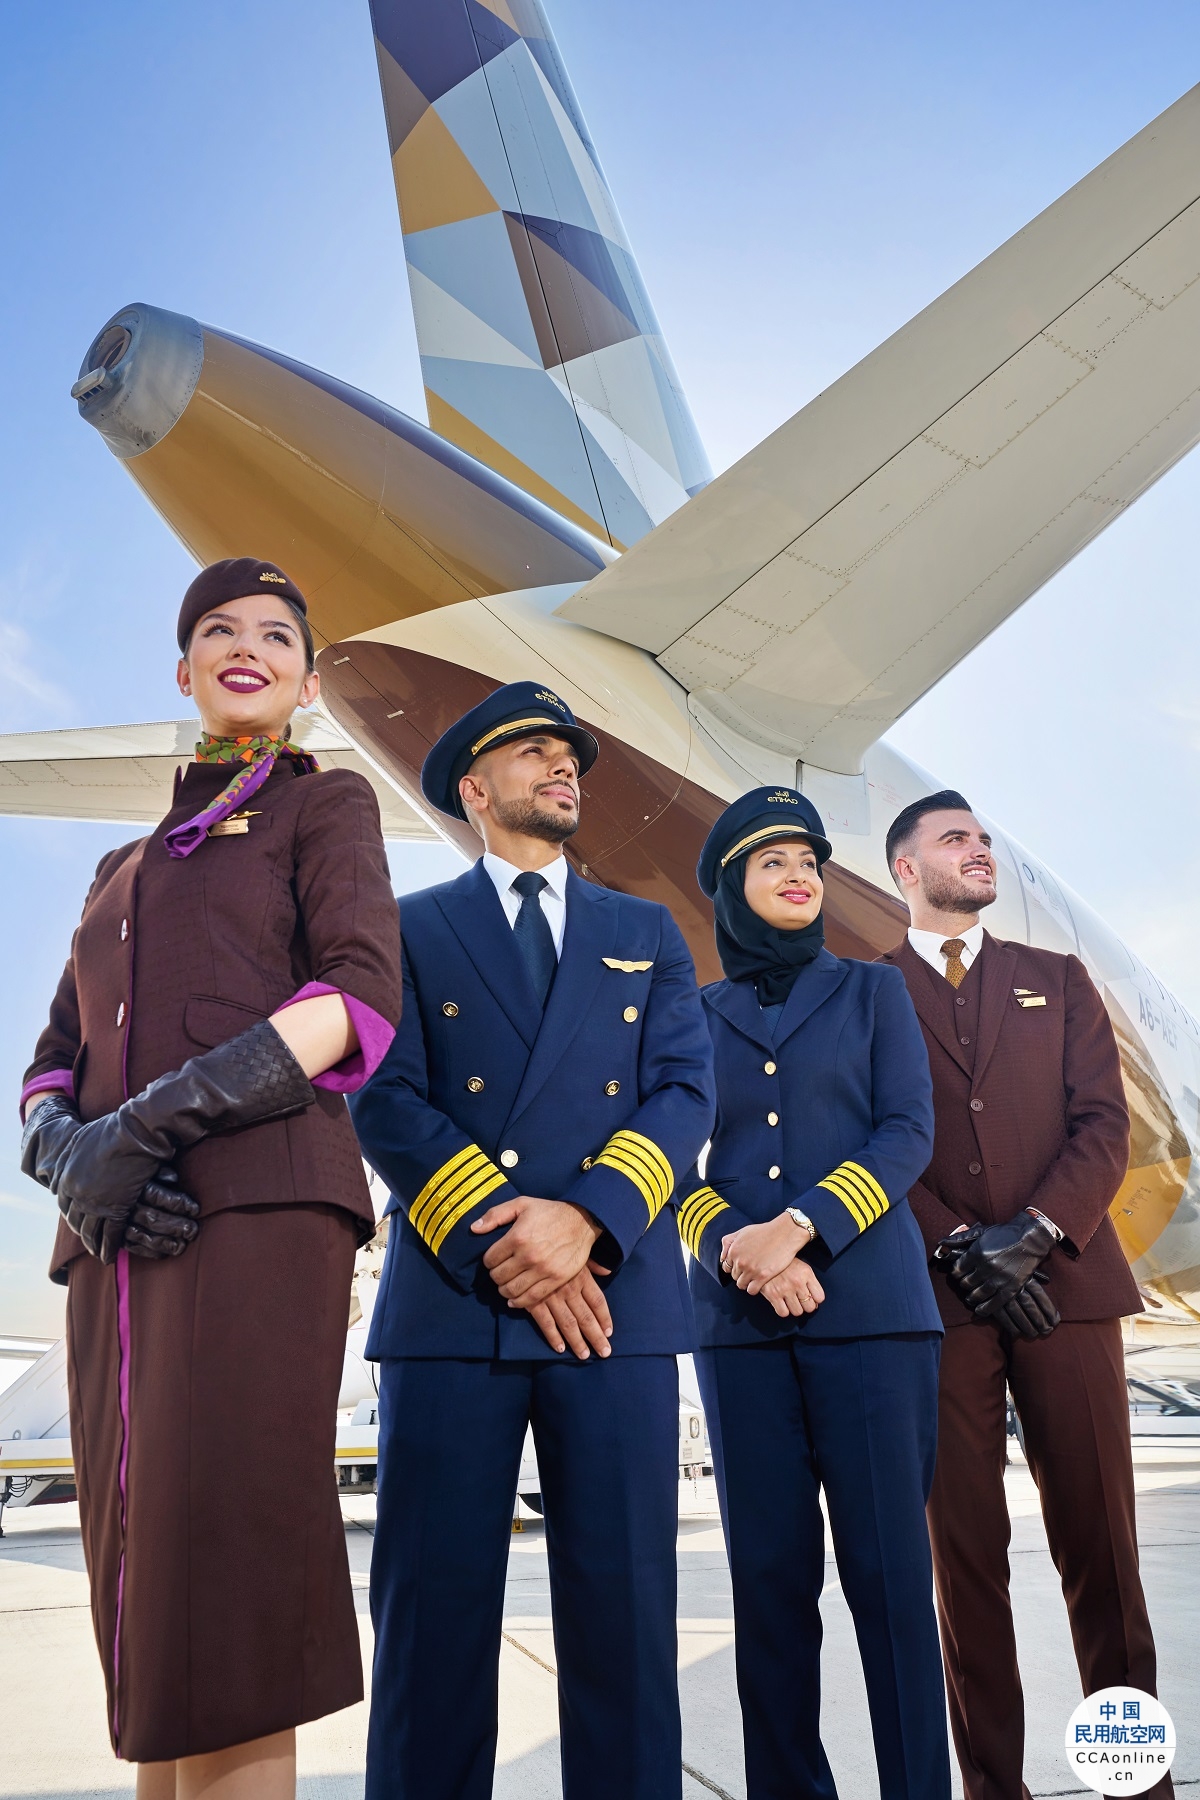 阿提哈德航空连续三年获评APEX“全球五星级航空公司”